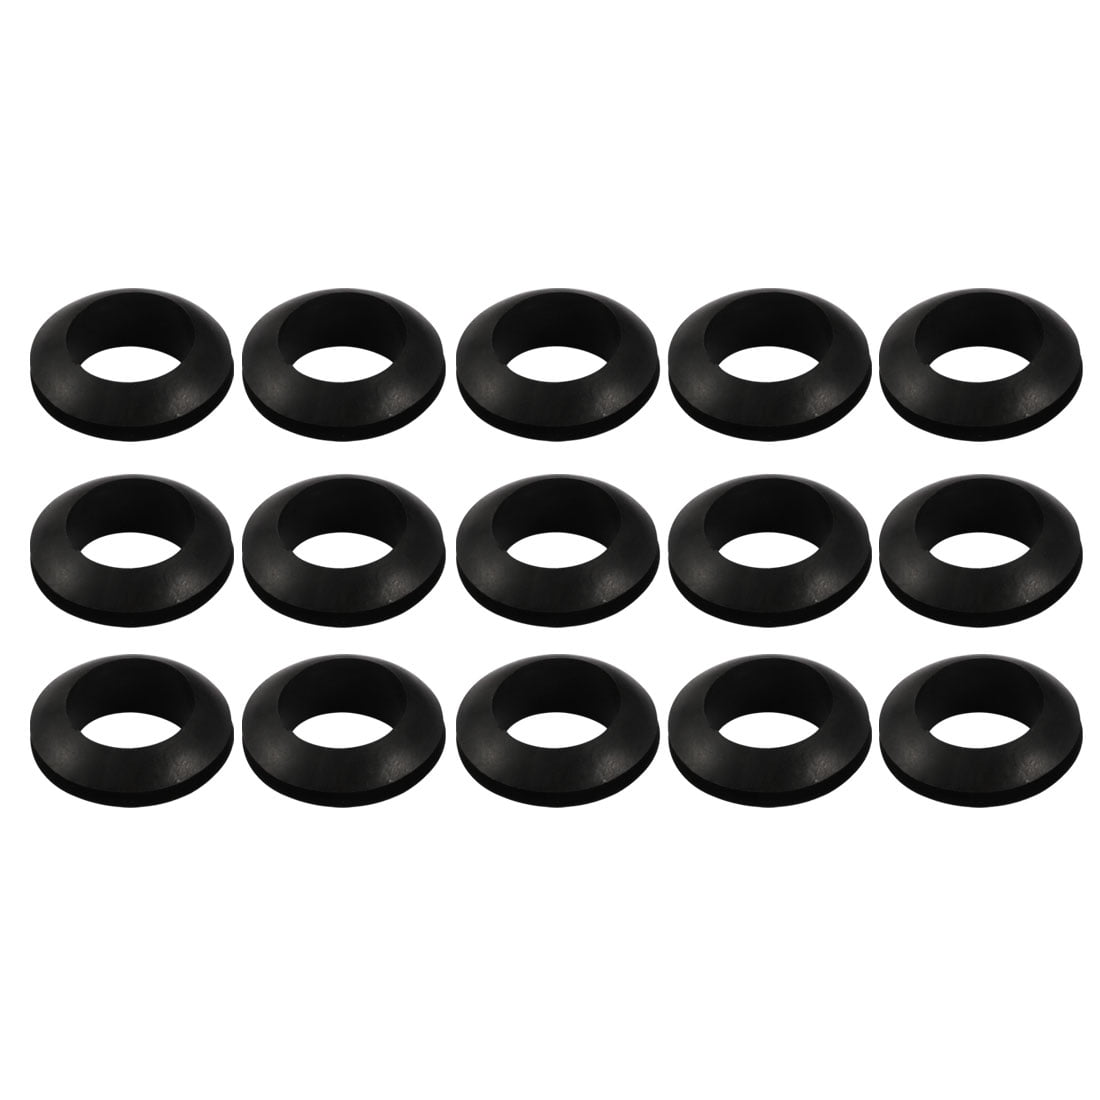 Details about   100pcs Wire Protective Grommets Black Rubber 20mm Dia Single Side Grommets 